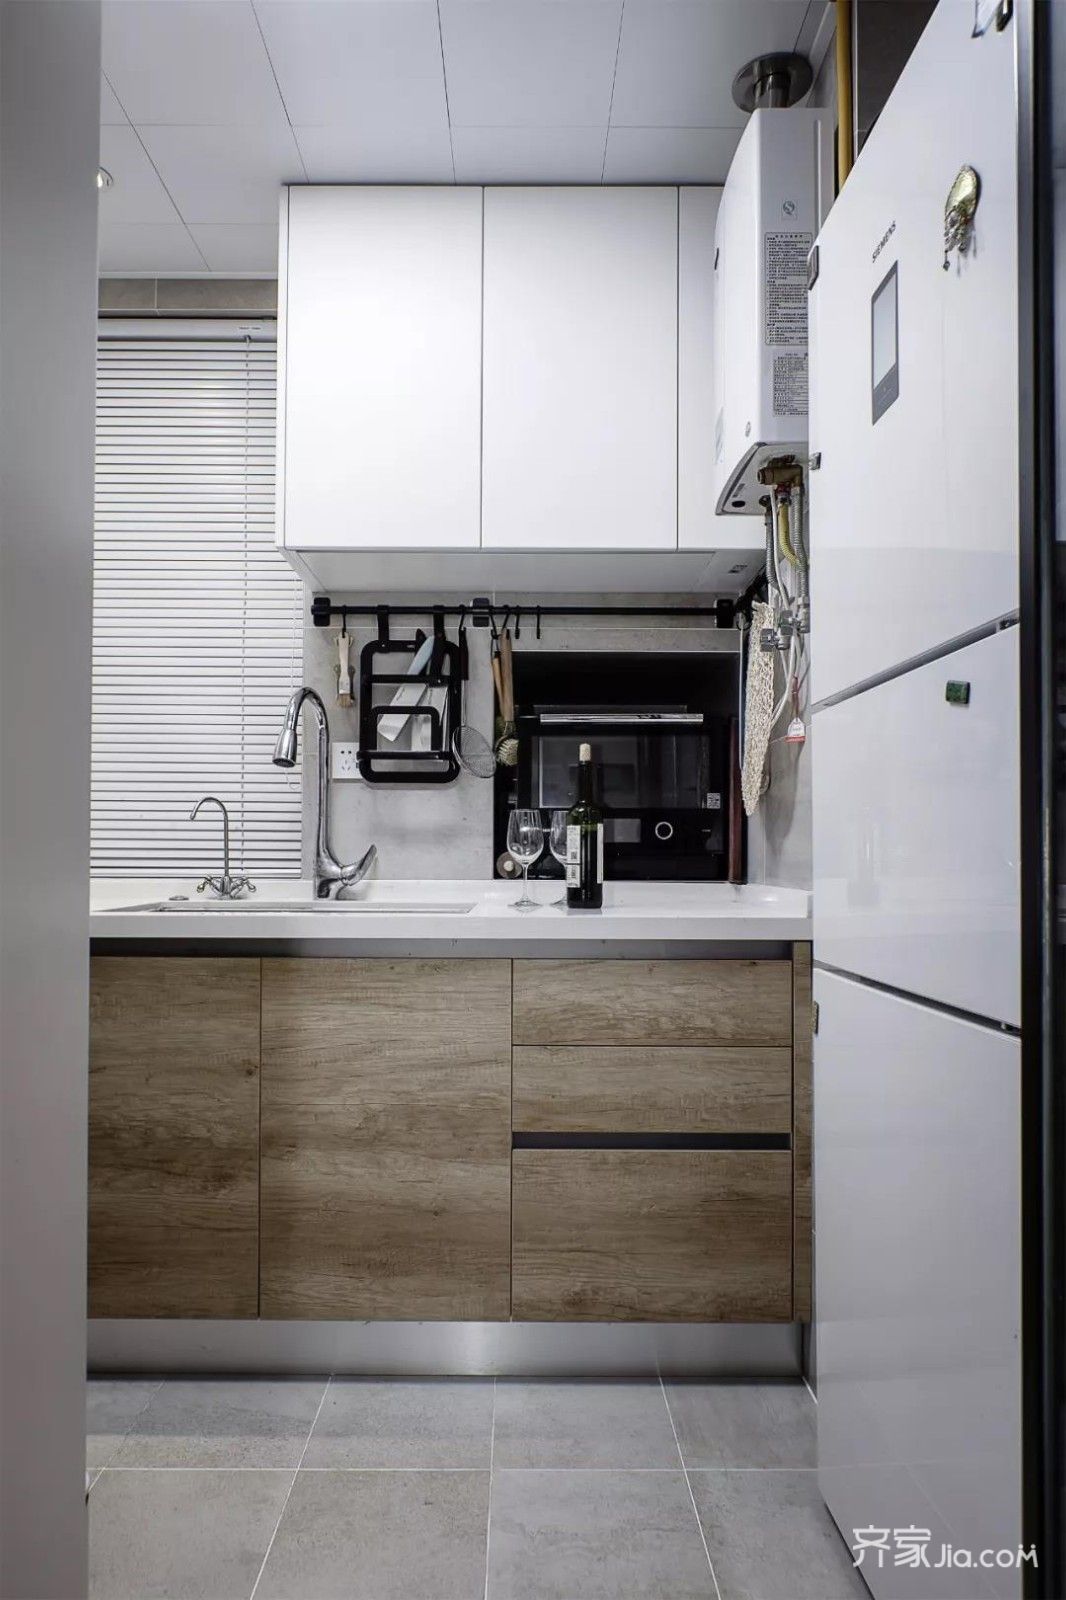 厨房淡灰色瓷砖,橱柜两色搭配,白色吊柜让狭小空间明亮,同时有层次